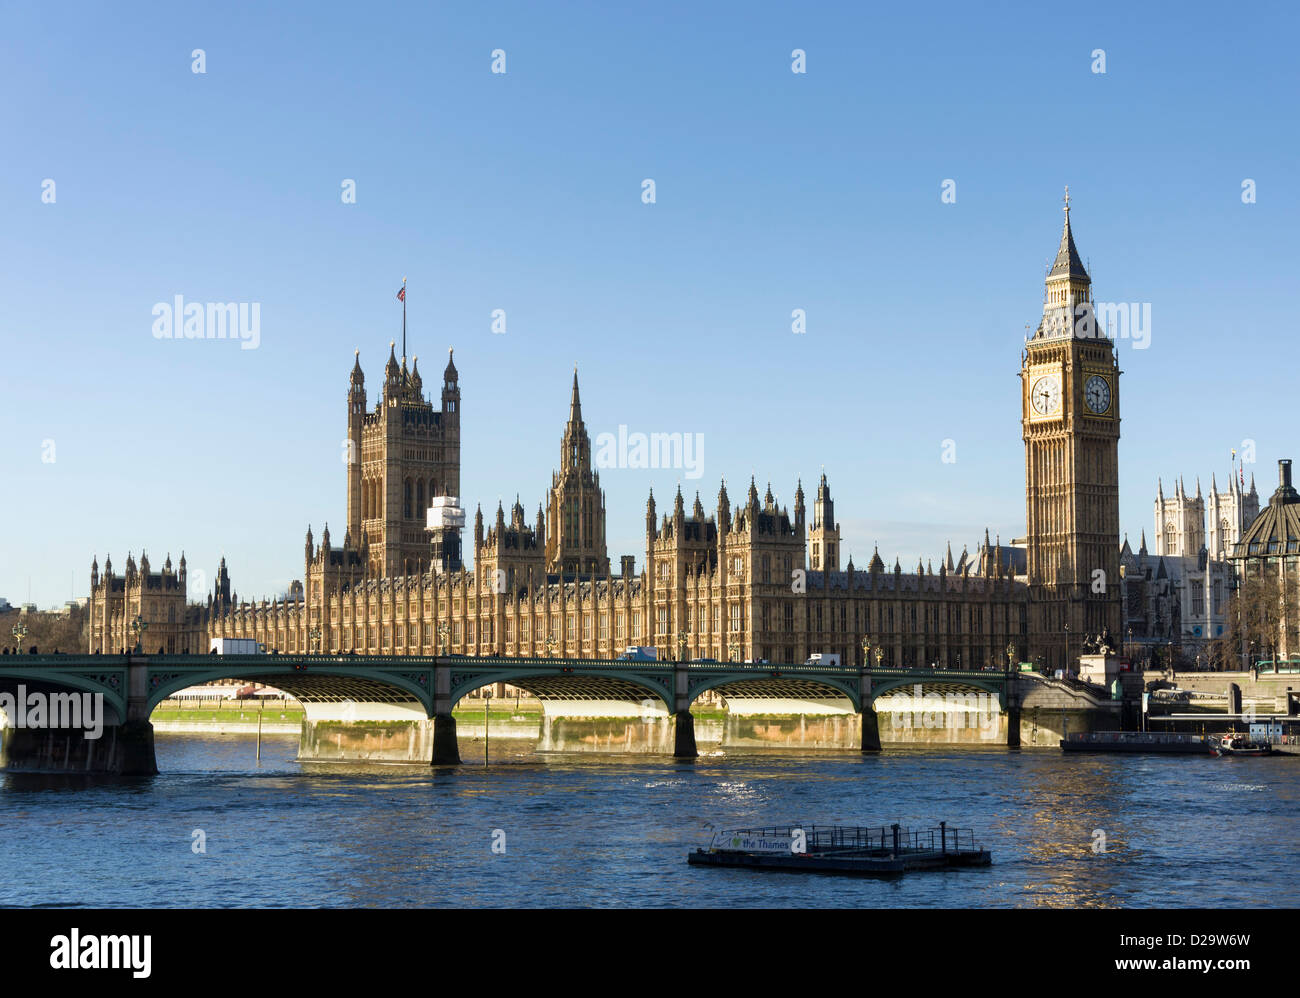 Las casas del parlamento y el Big Ben, Londres, Inglaterra, Reino Unido - visto desde la orilla sur del río Támesis Foto de stock